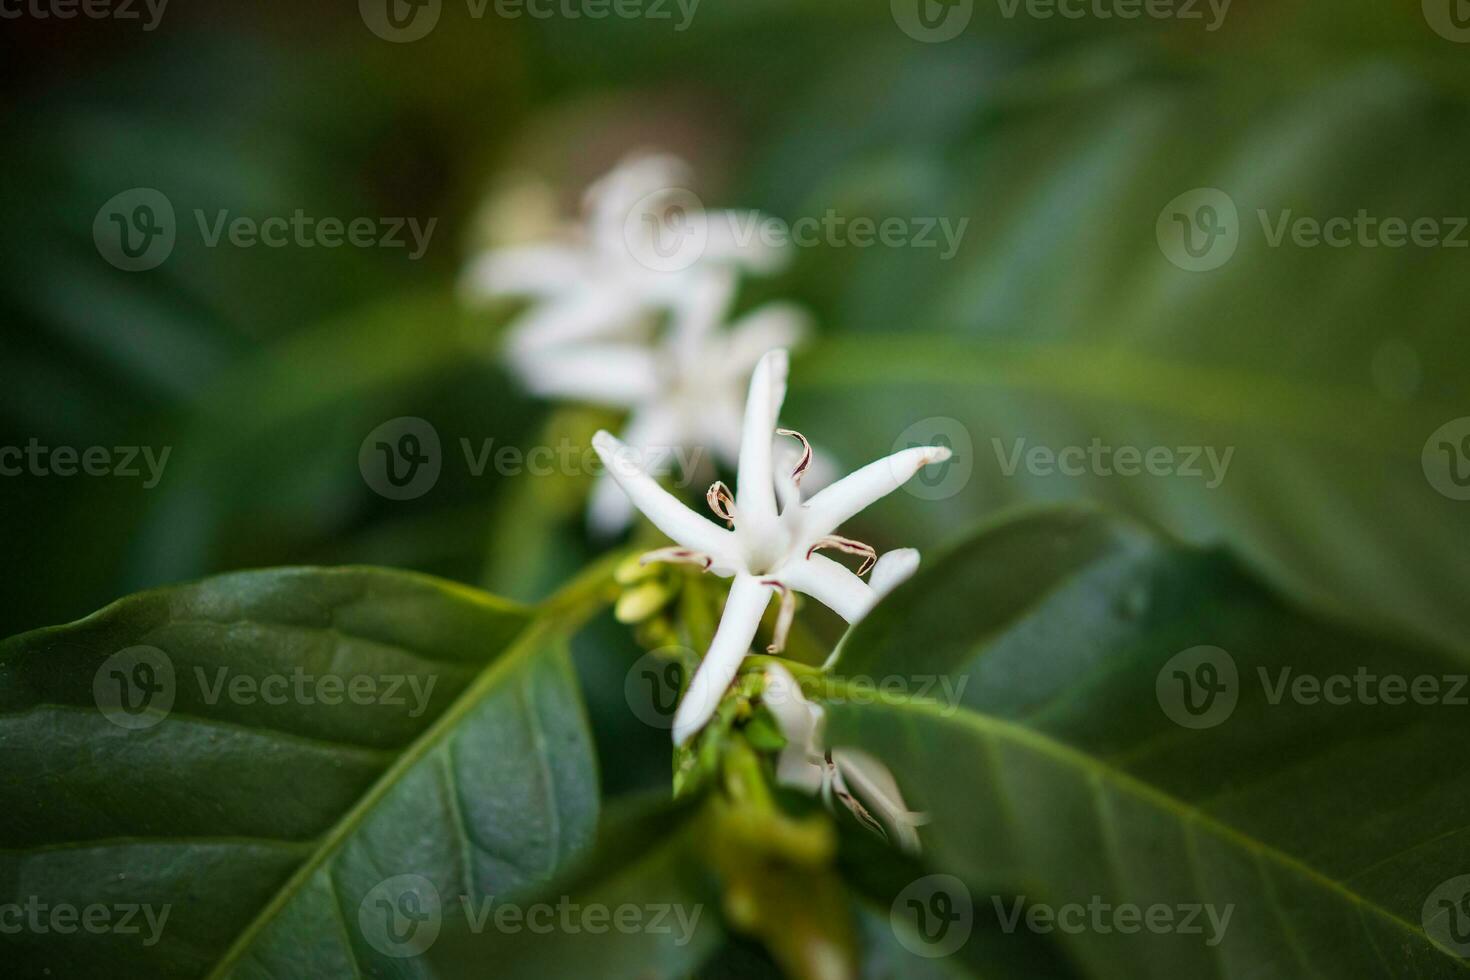 bianca fiore nel caffè albero vicino su foto